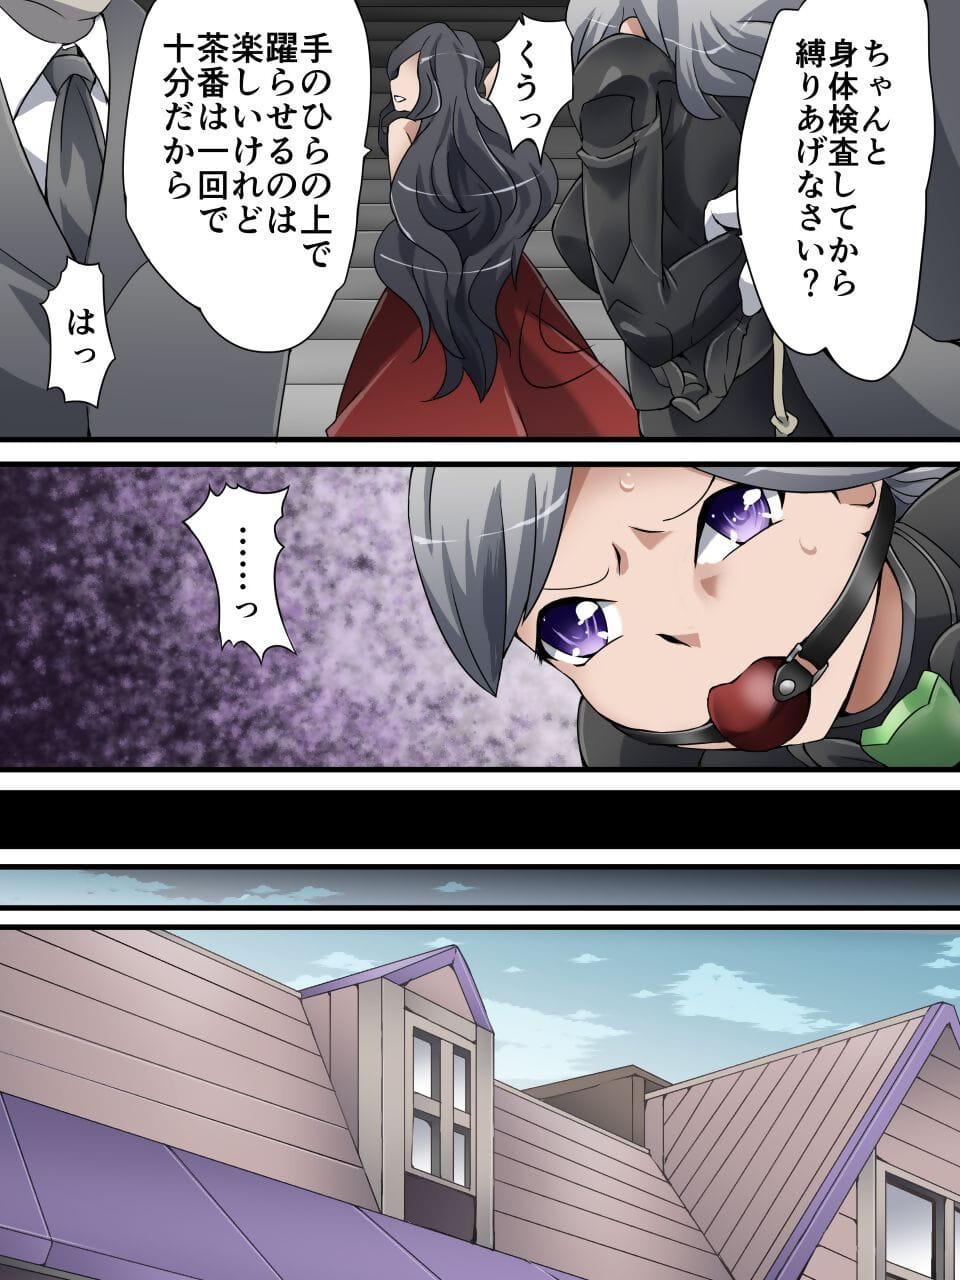 Kaitou Silver Cat Manga Ban Dai 4-wa page 1